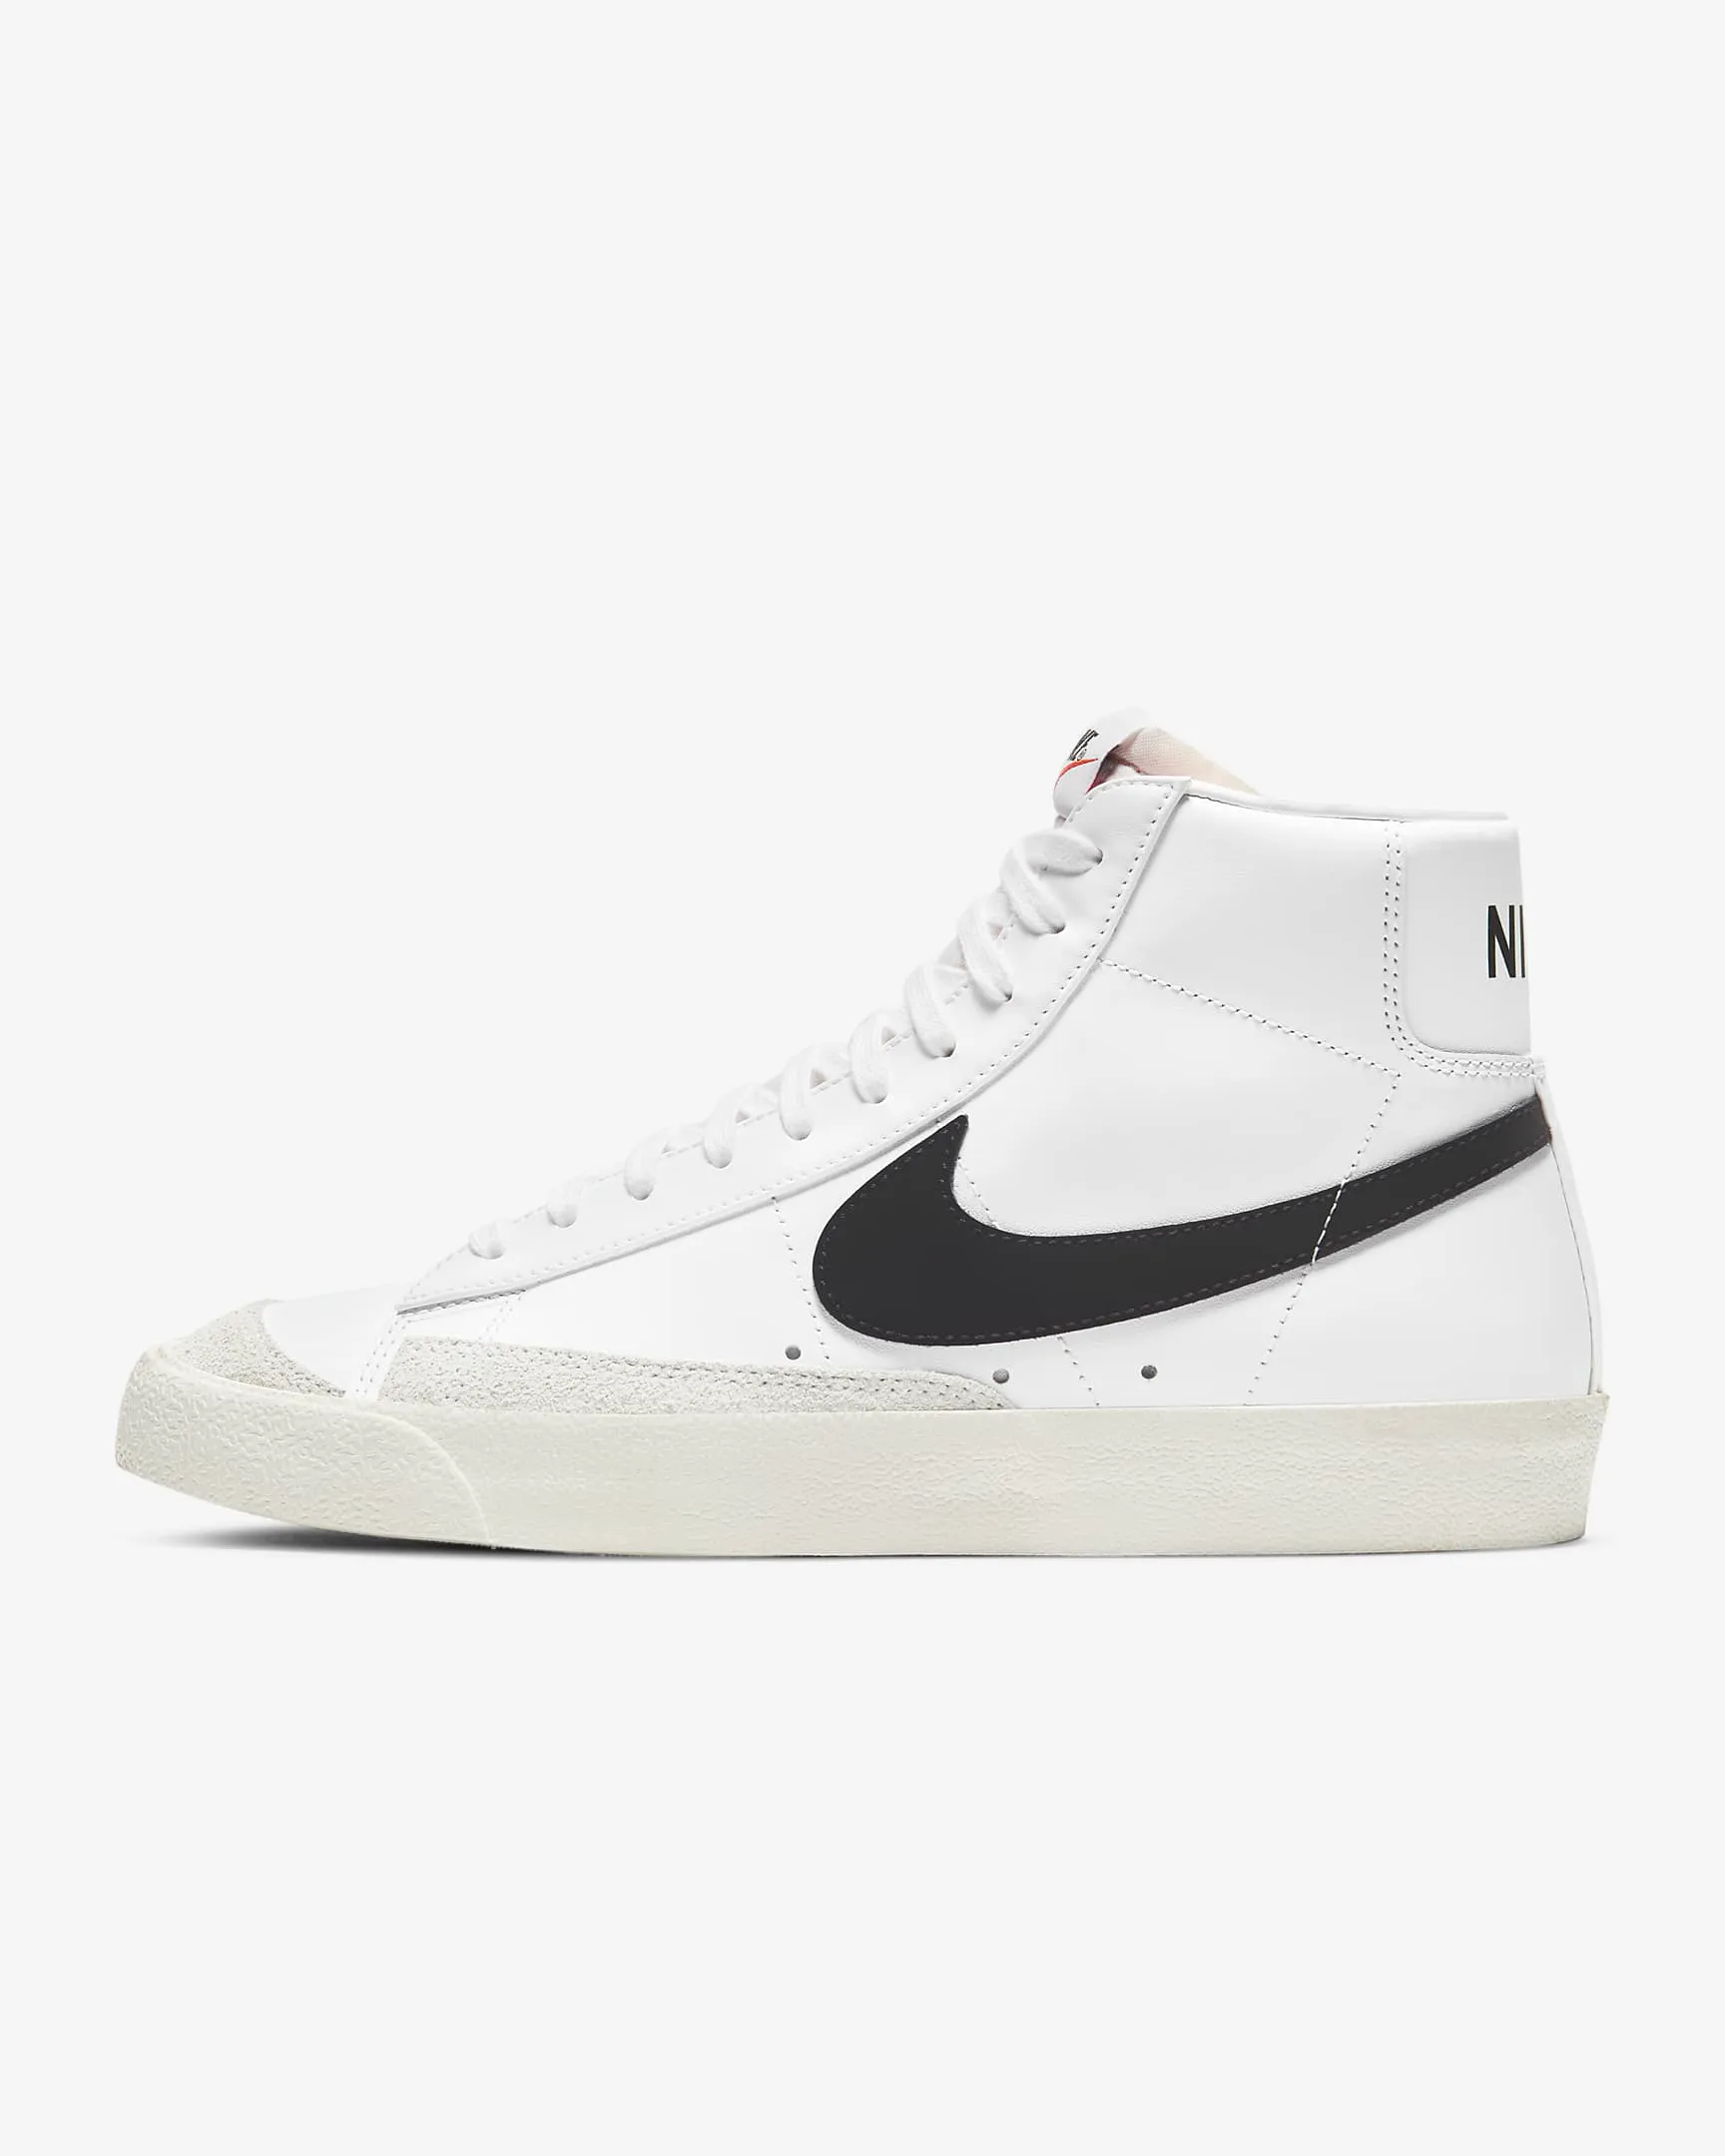 02 - Nike Air Force 1 '07 Sneakers